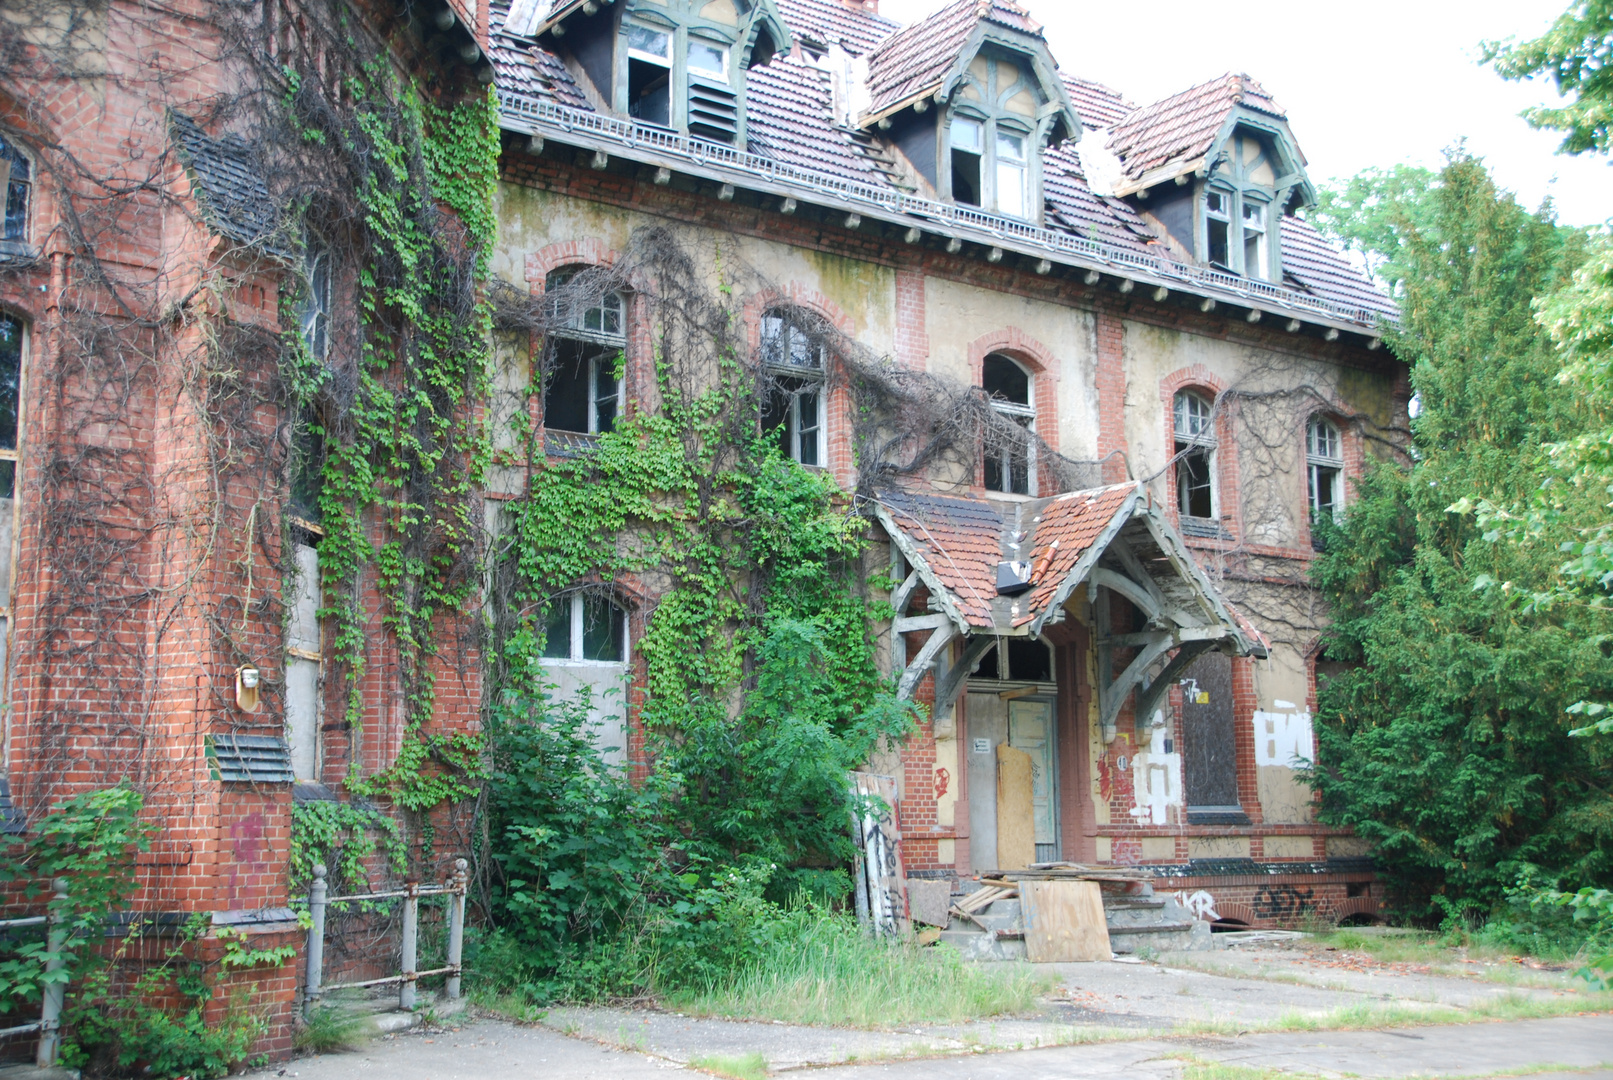 Geisterhaus